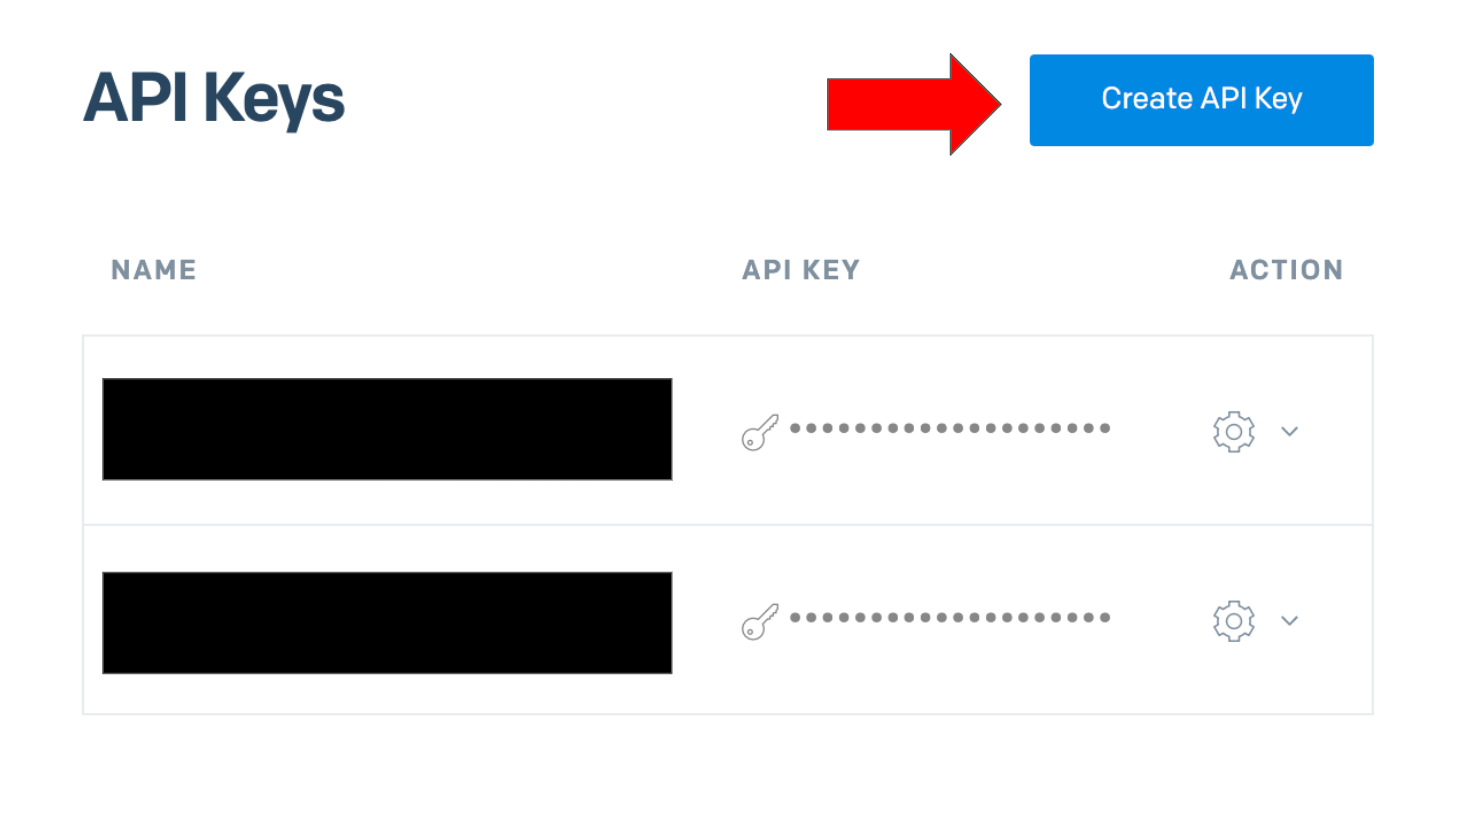 SendGrid API Keys Page. An arrow is pointed to the Create API Key button